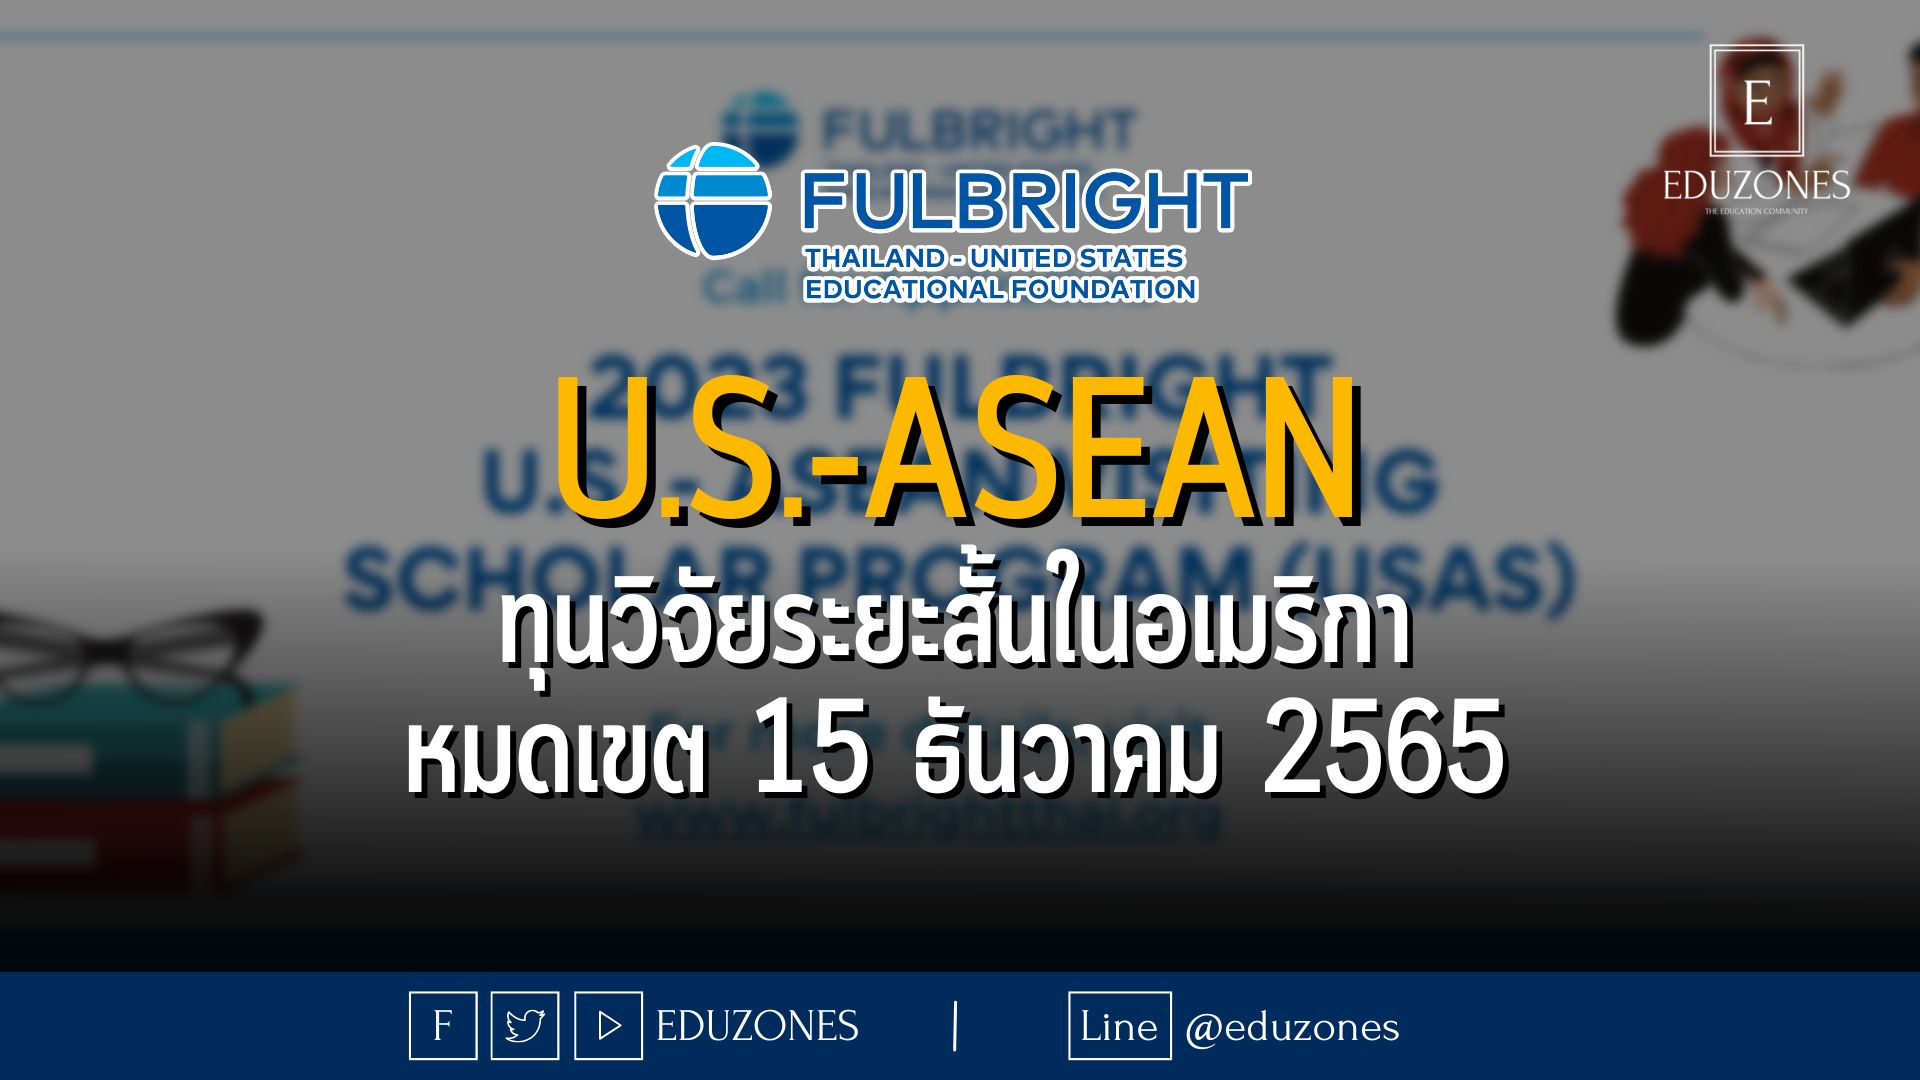 ทุนวิจัยระยะสั้นในอเมริกา จาก Fulbright - หมดเขต 18 ธันวาคม 2565